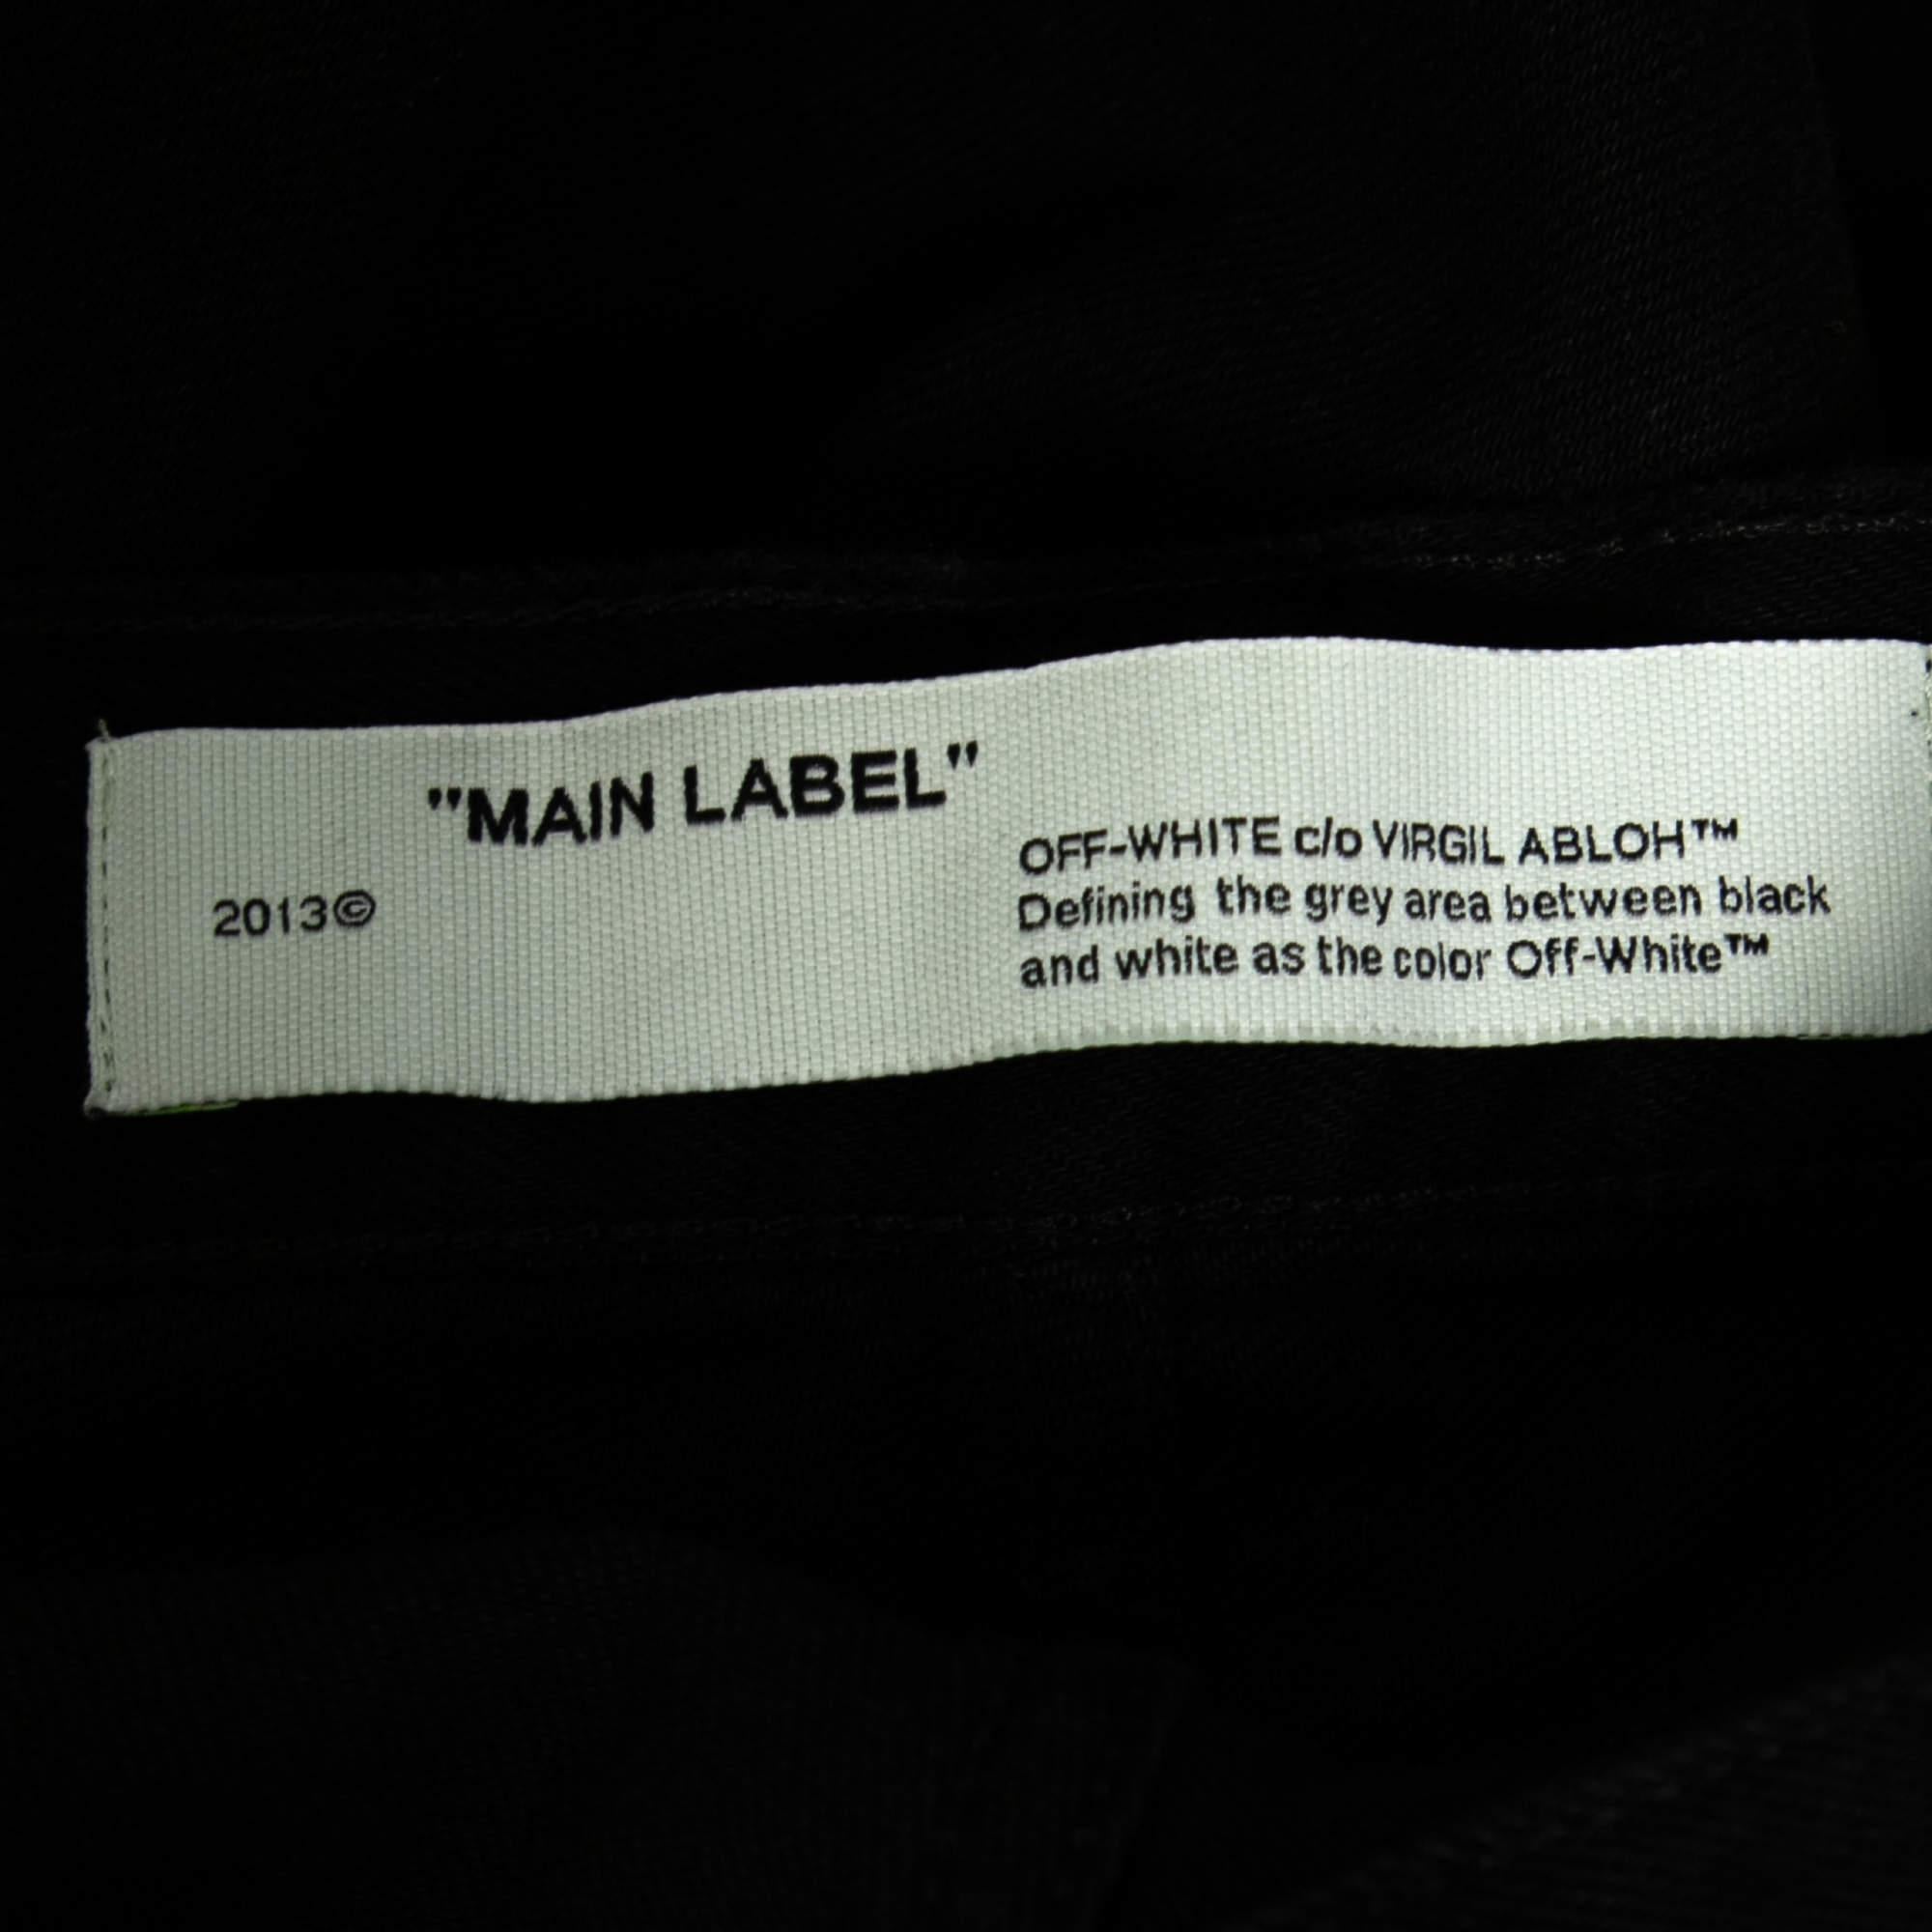 Off-White Black Denim Arrow Printed Jeans M In New Condition For Sale In Dubai, Al Qouz 2